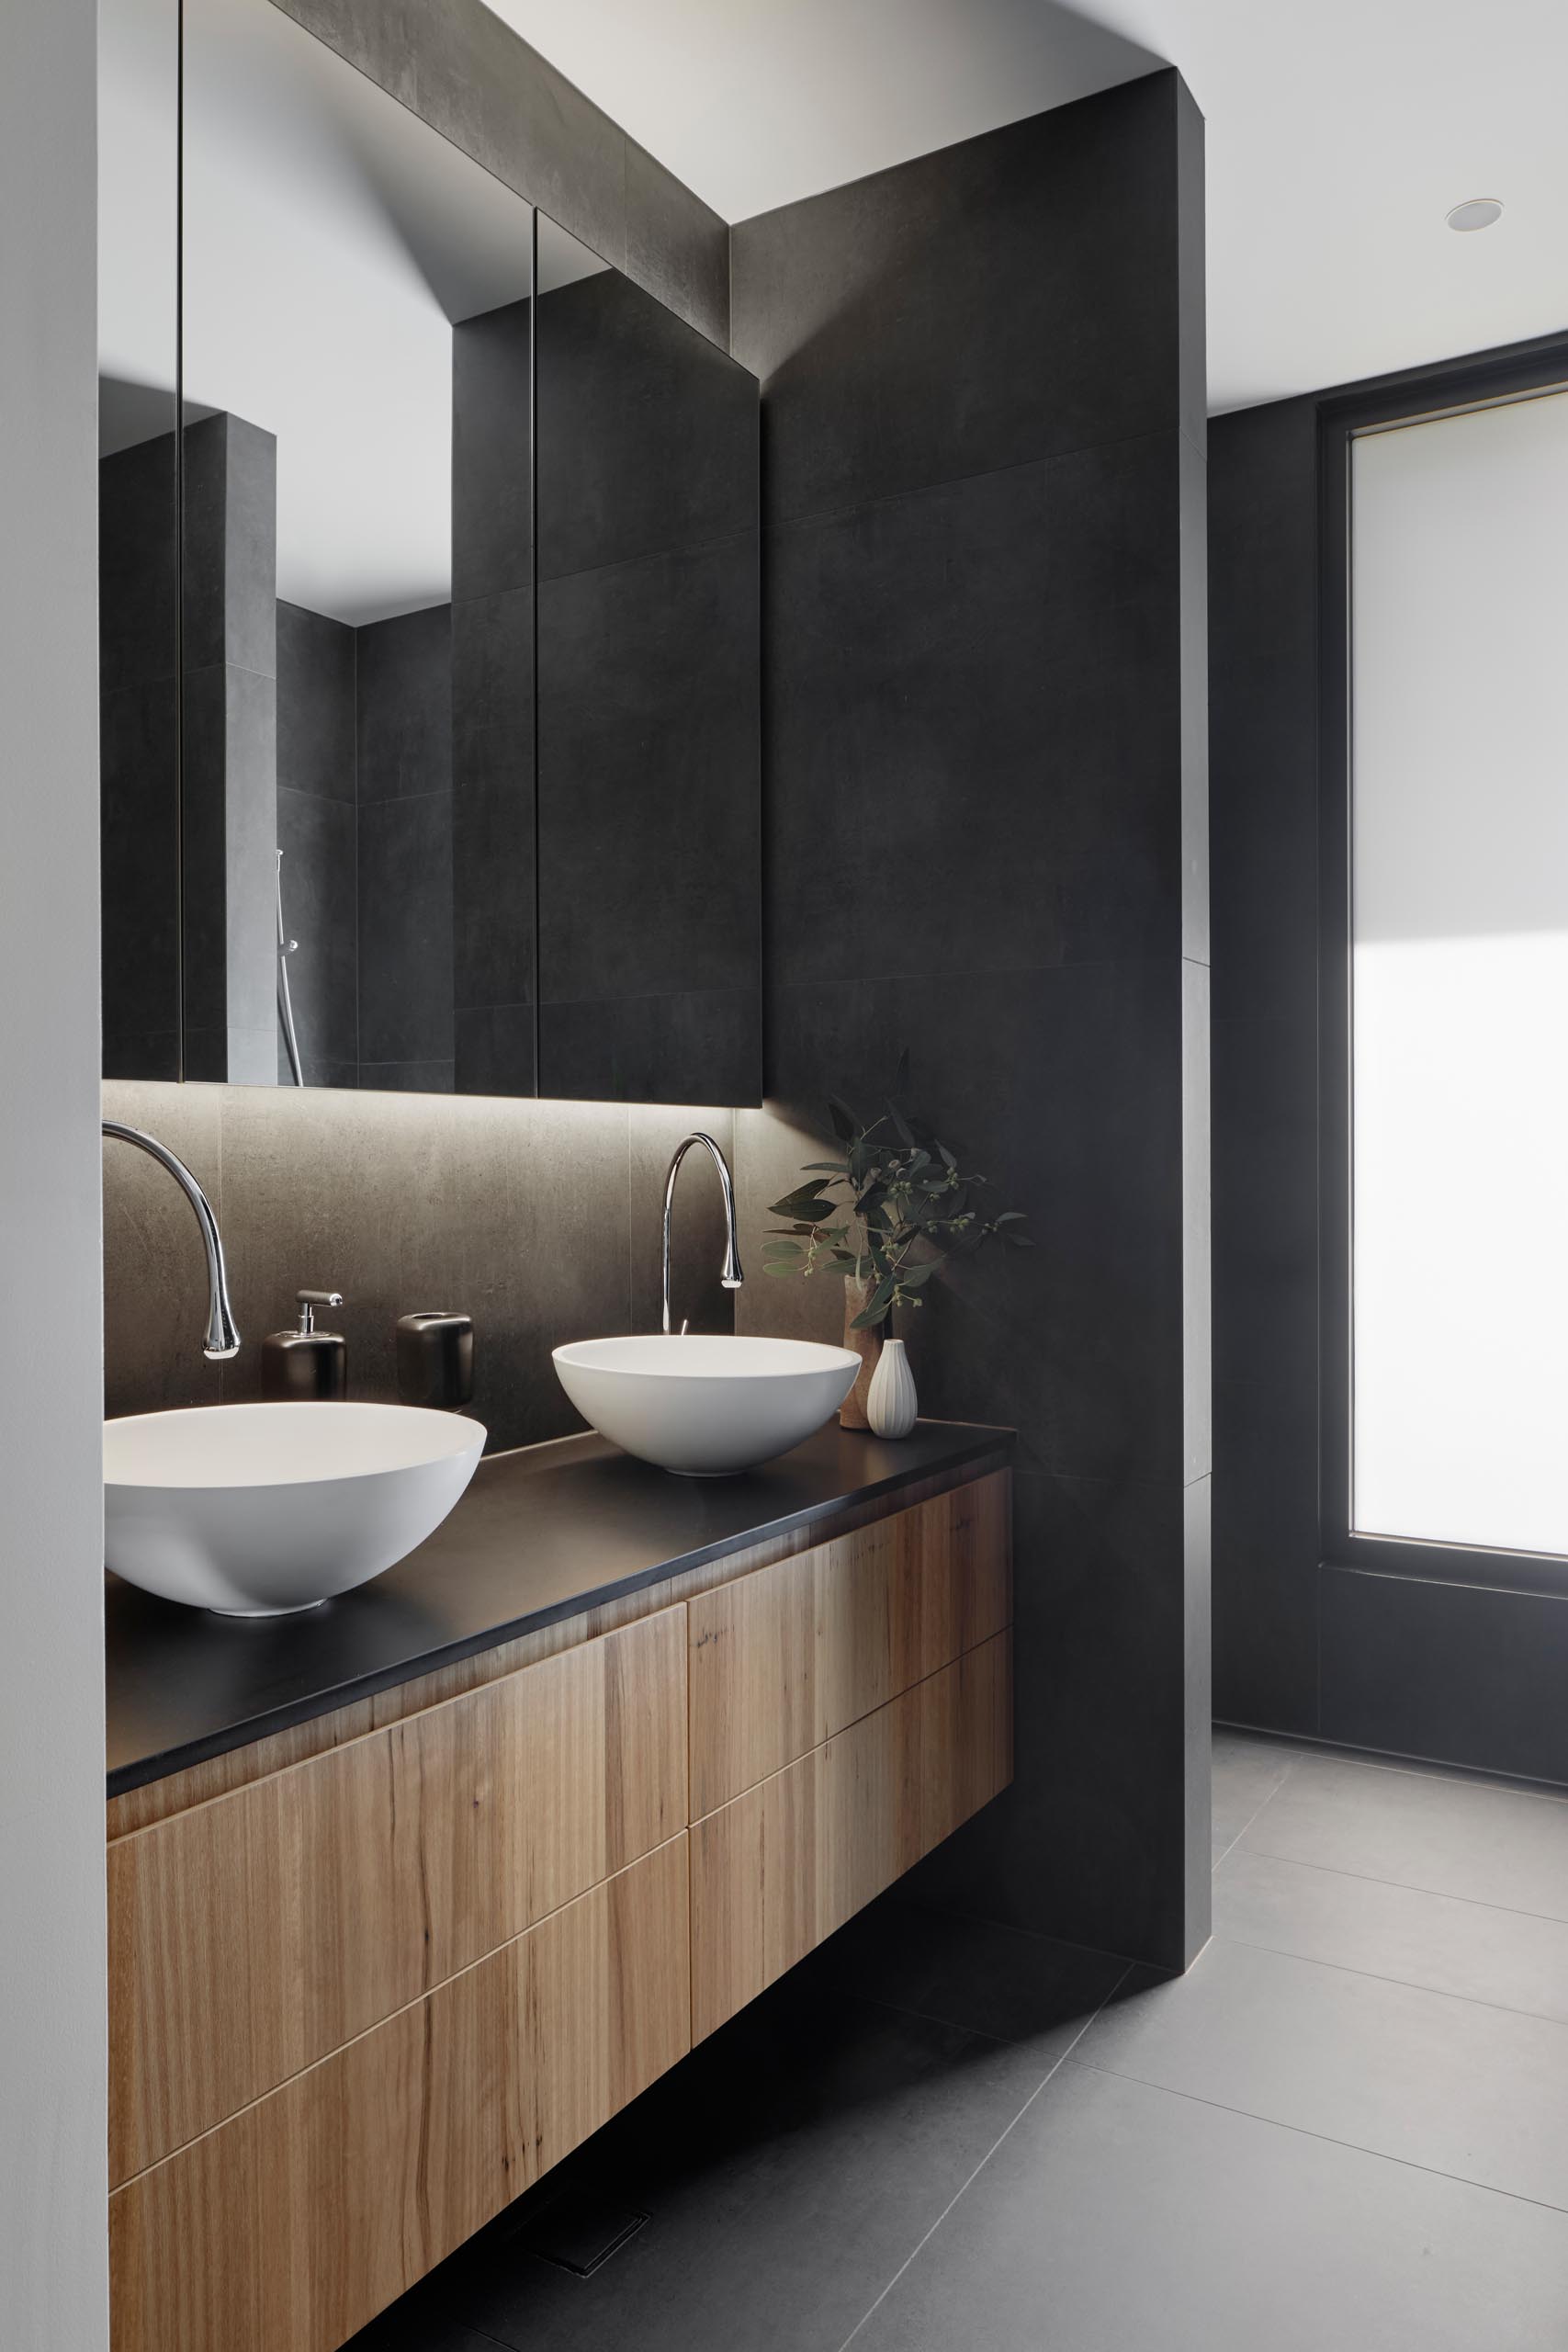 В этой современной ванной комнате темно-серые стены и пол сочетаются с деревянной раковиной, белыми раковинами и зеркалом с подсветкой.